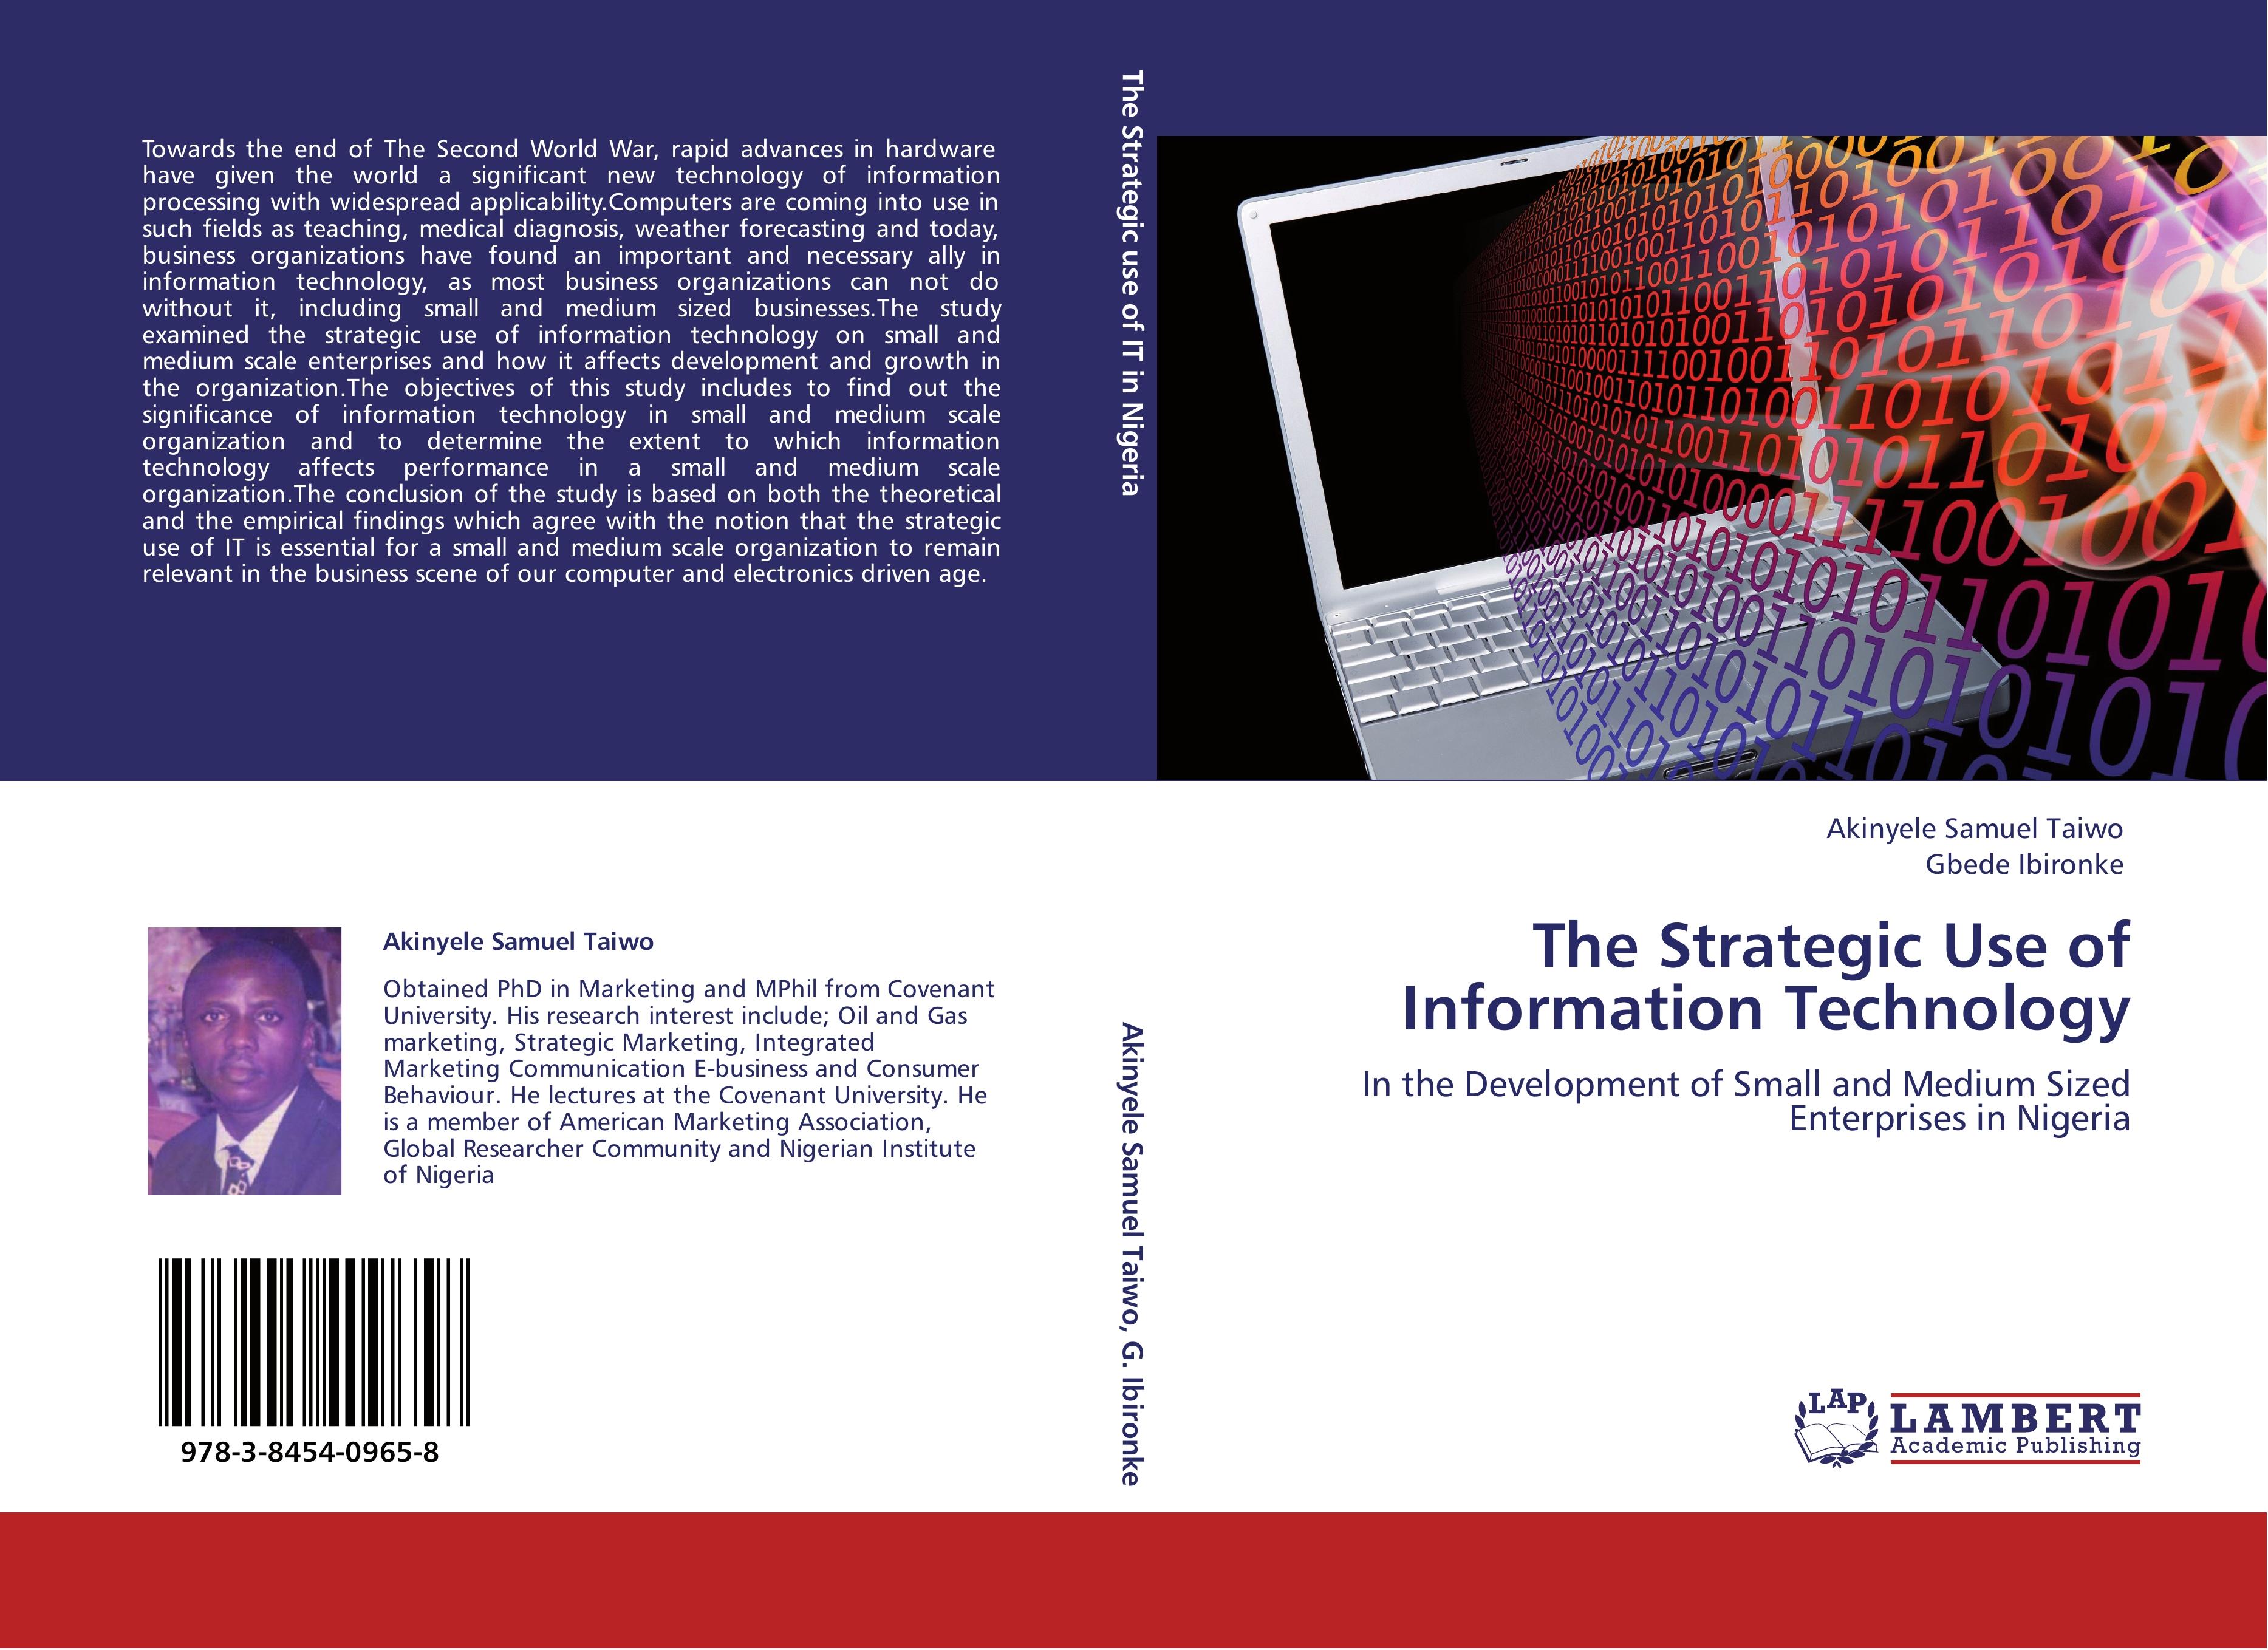 The Strategic Use of Information Technology - AKINYELE SAMUEL TAIWO Gbede Ibironke